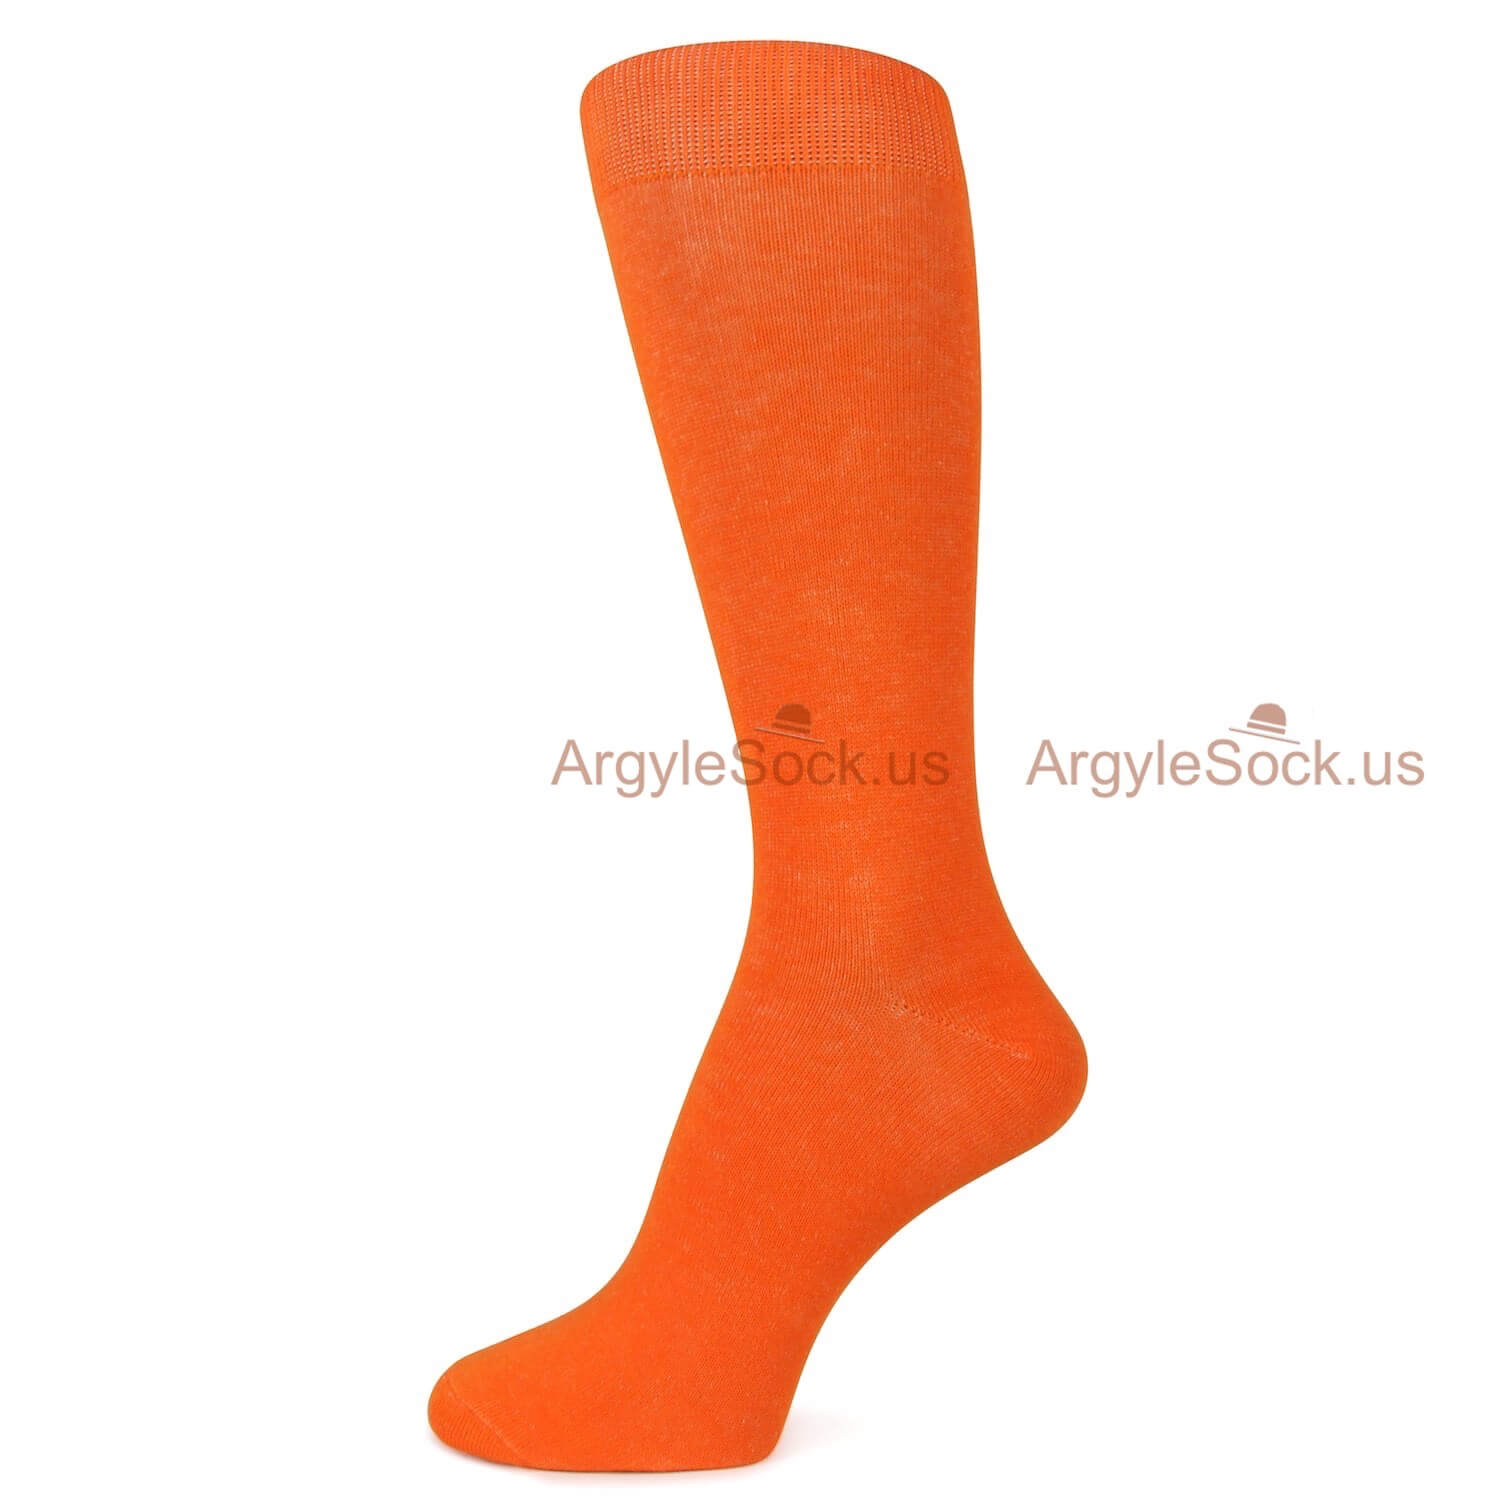 Dark Orange Colored Socks for Men